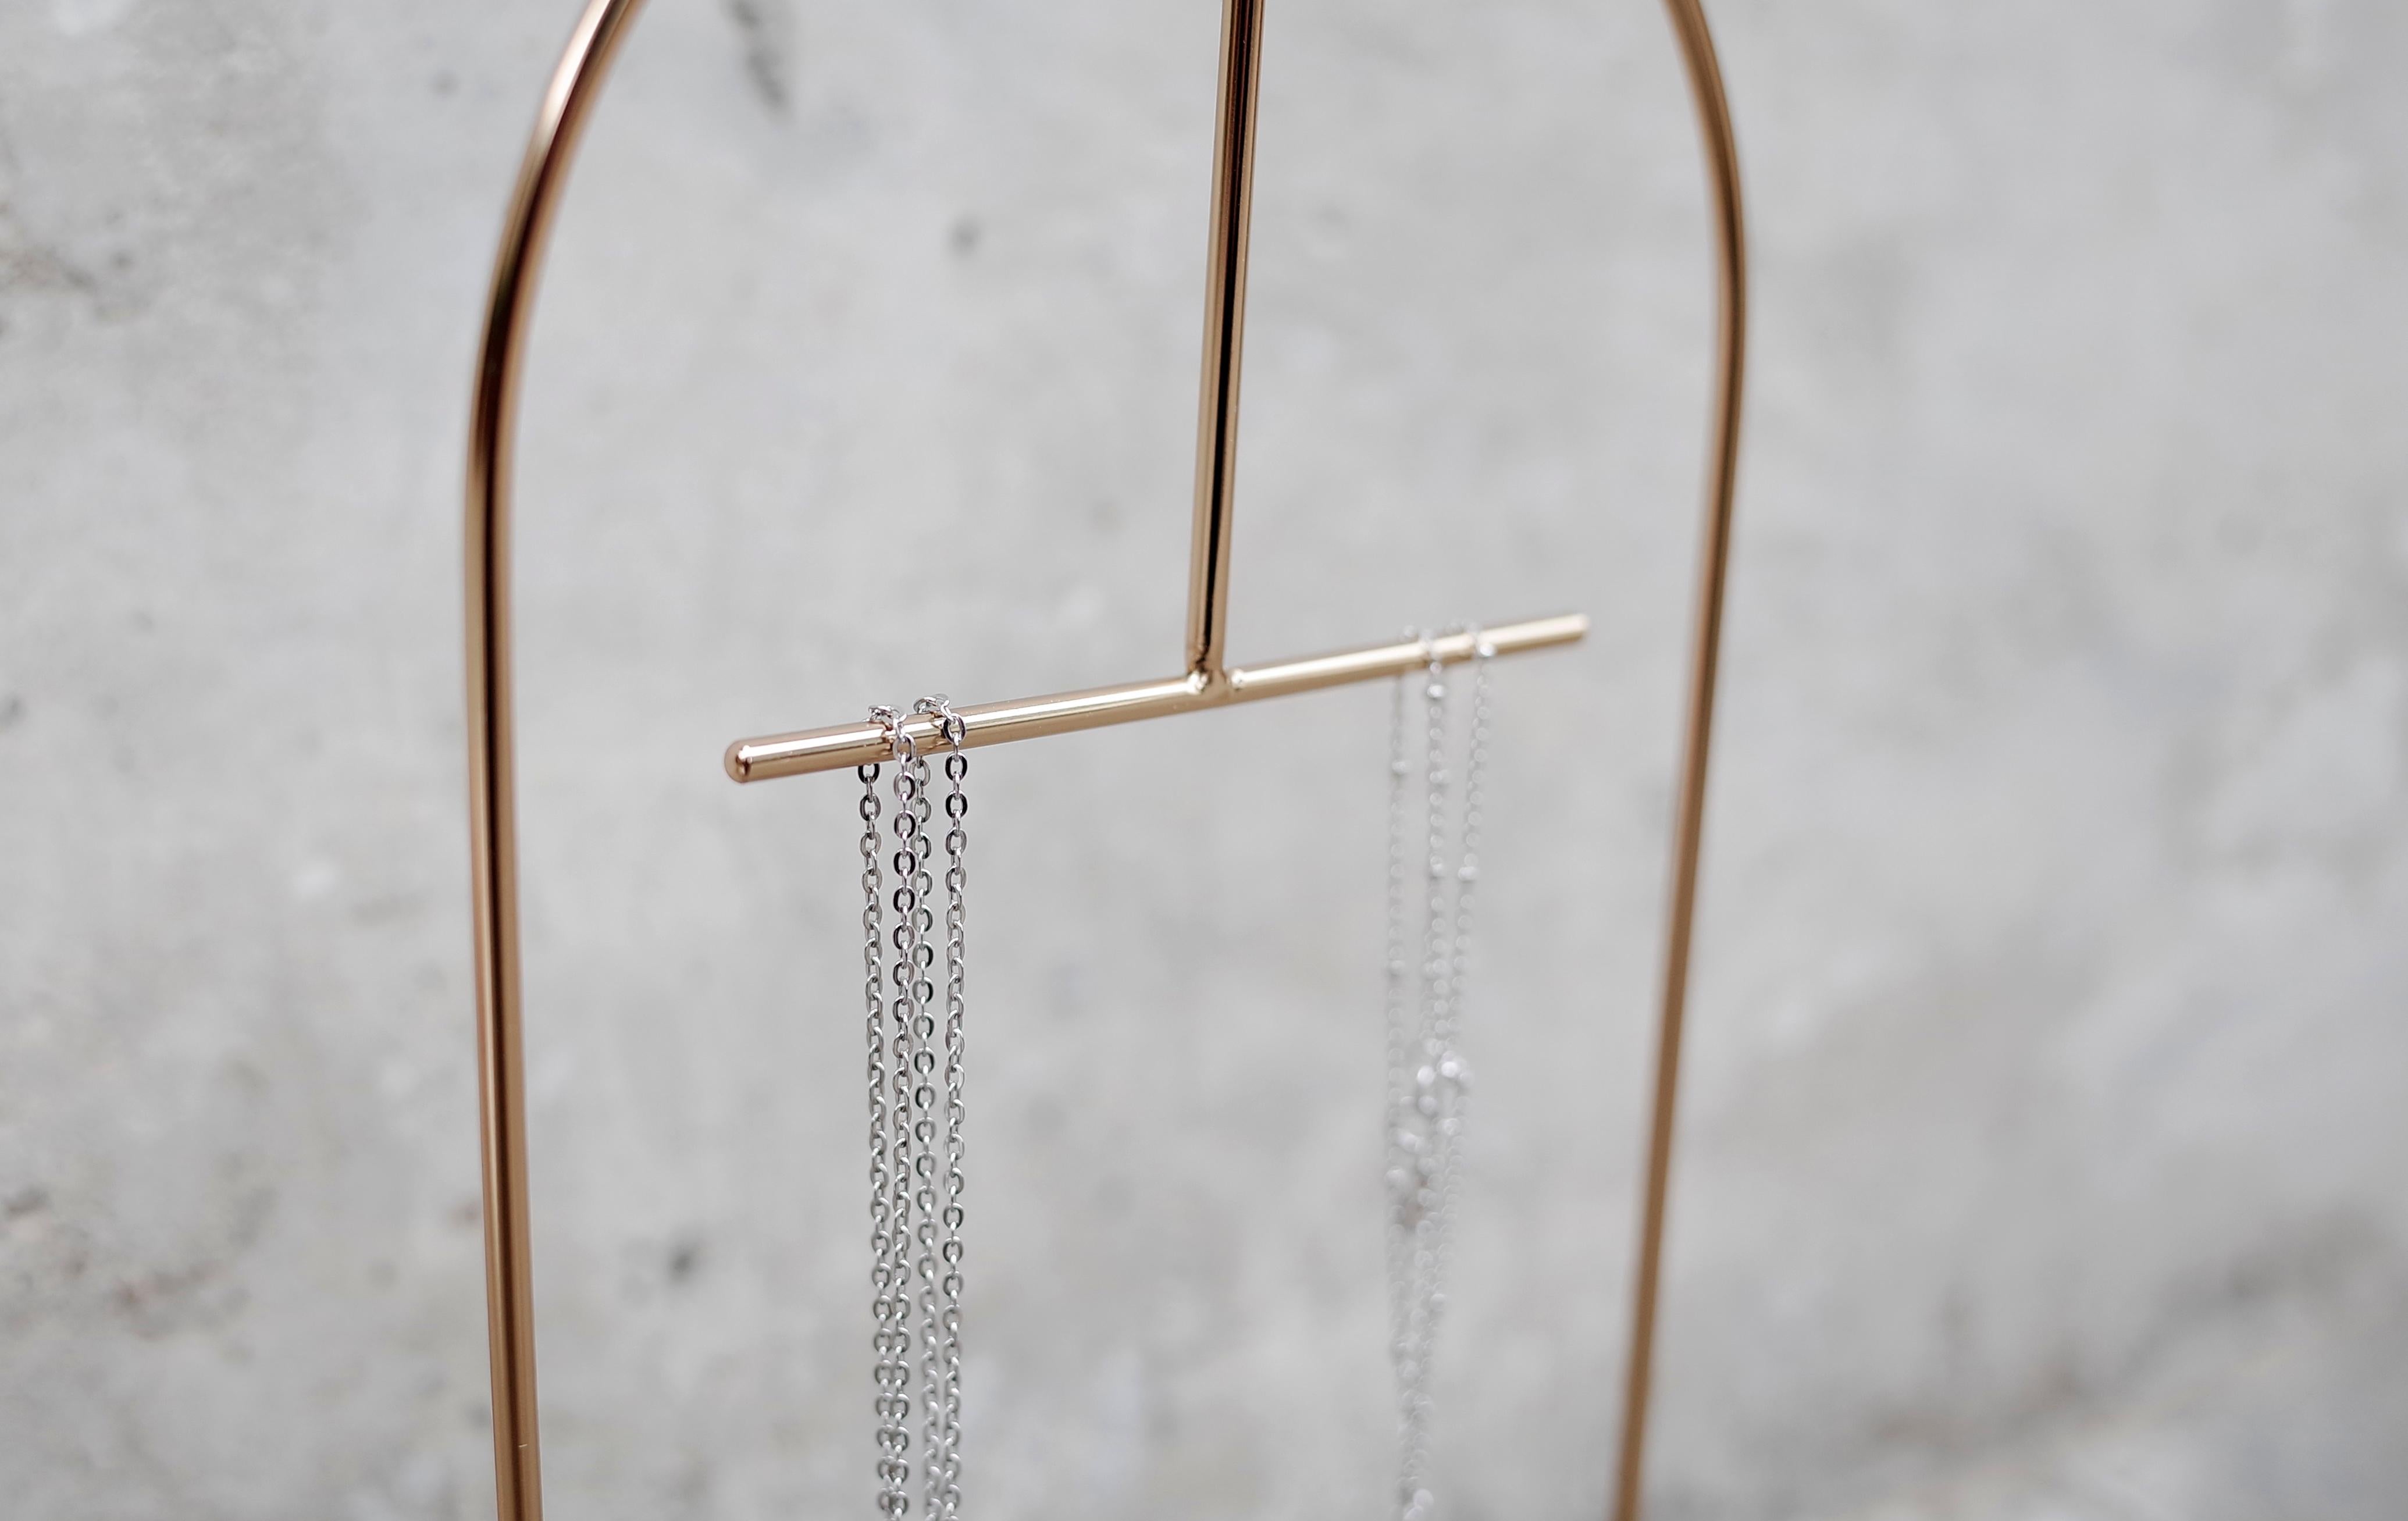 Le support à bijoux Gilded rend l'organisation et la présentation de vos boucles d'oreilles et colliers préférés simples et sophistiqués. Fabriqué en acier inoxydable avec une finition en cuivre et un bassin en marbre, son design minimal met en